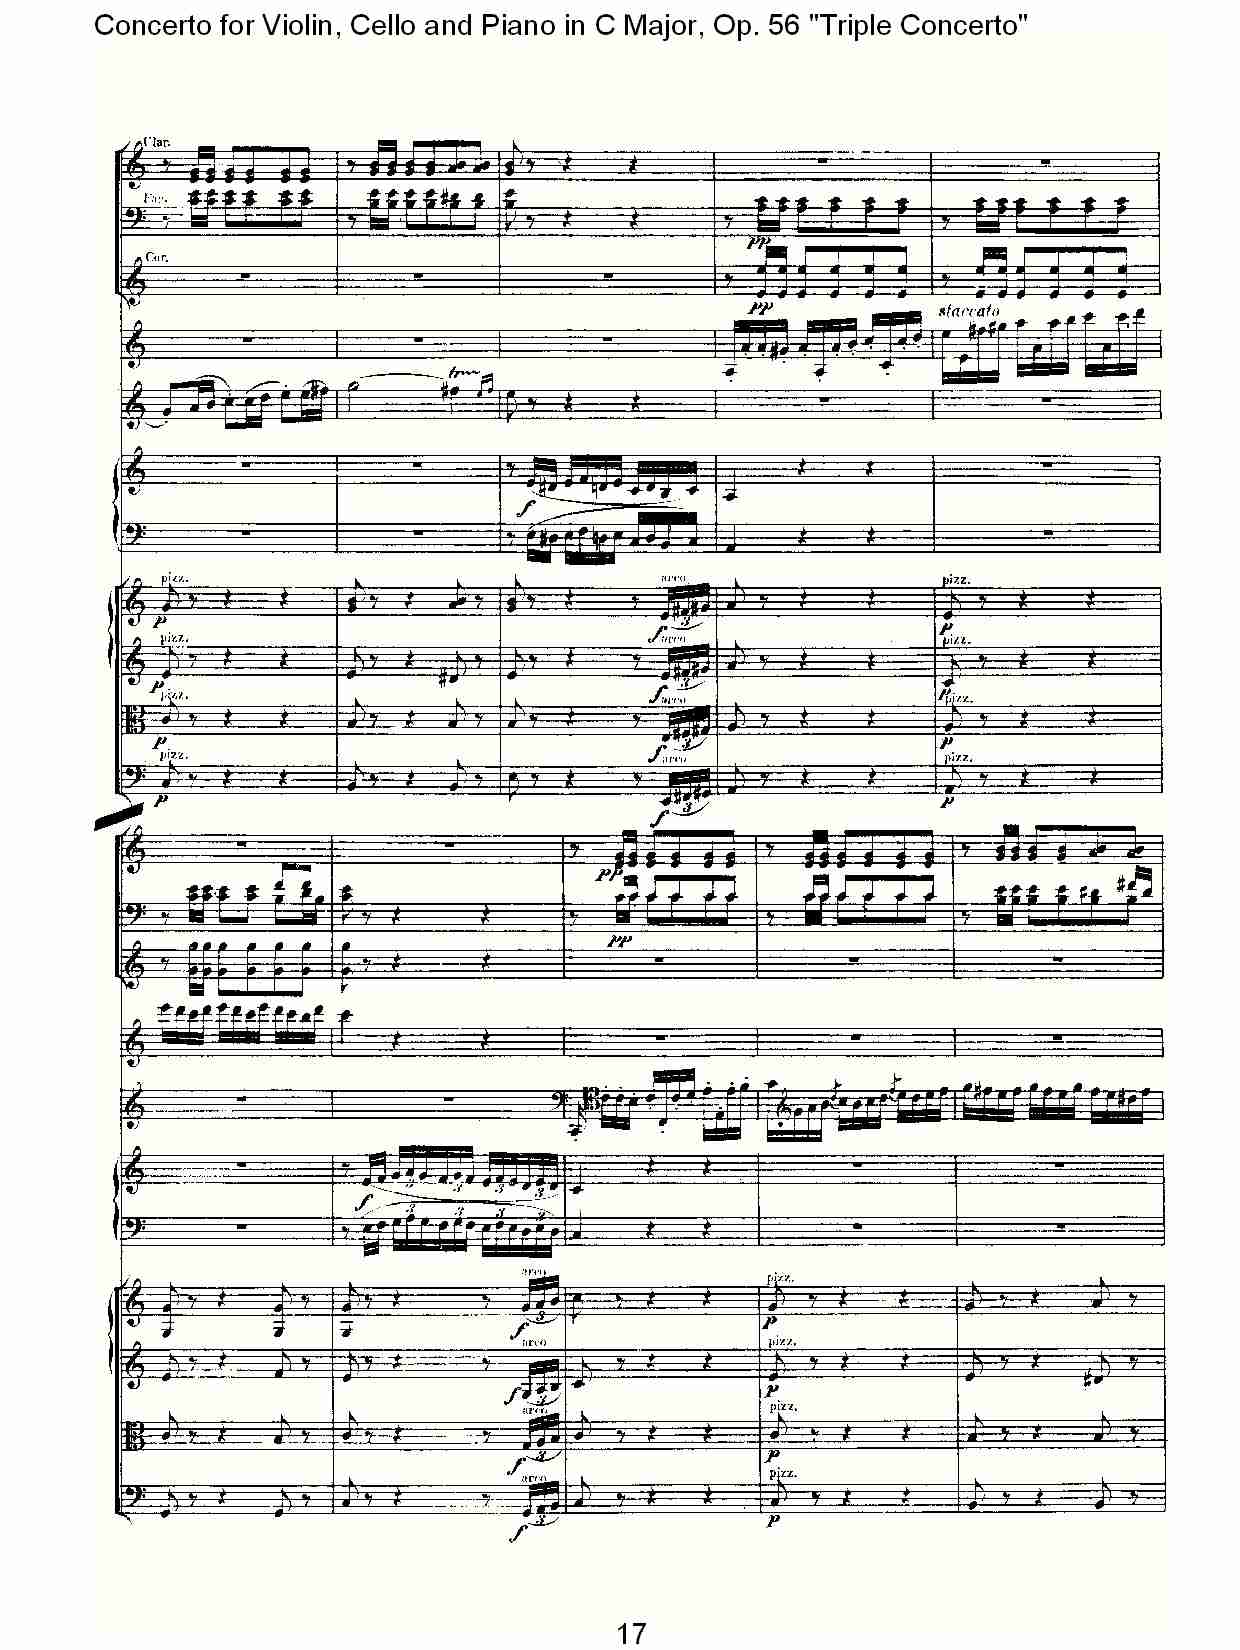 C大调大提琴与钢琴协奏曲 Op.56第三乐章(二)